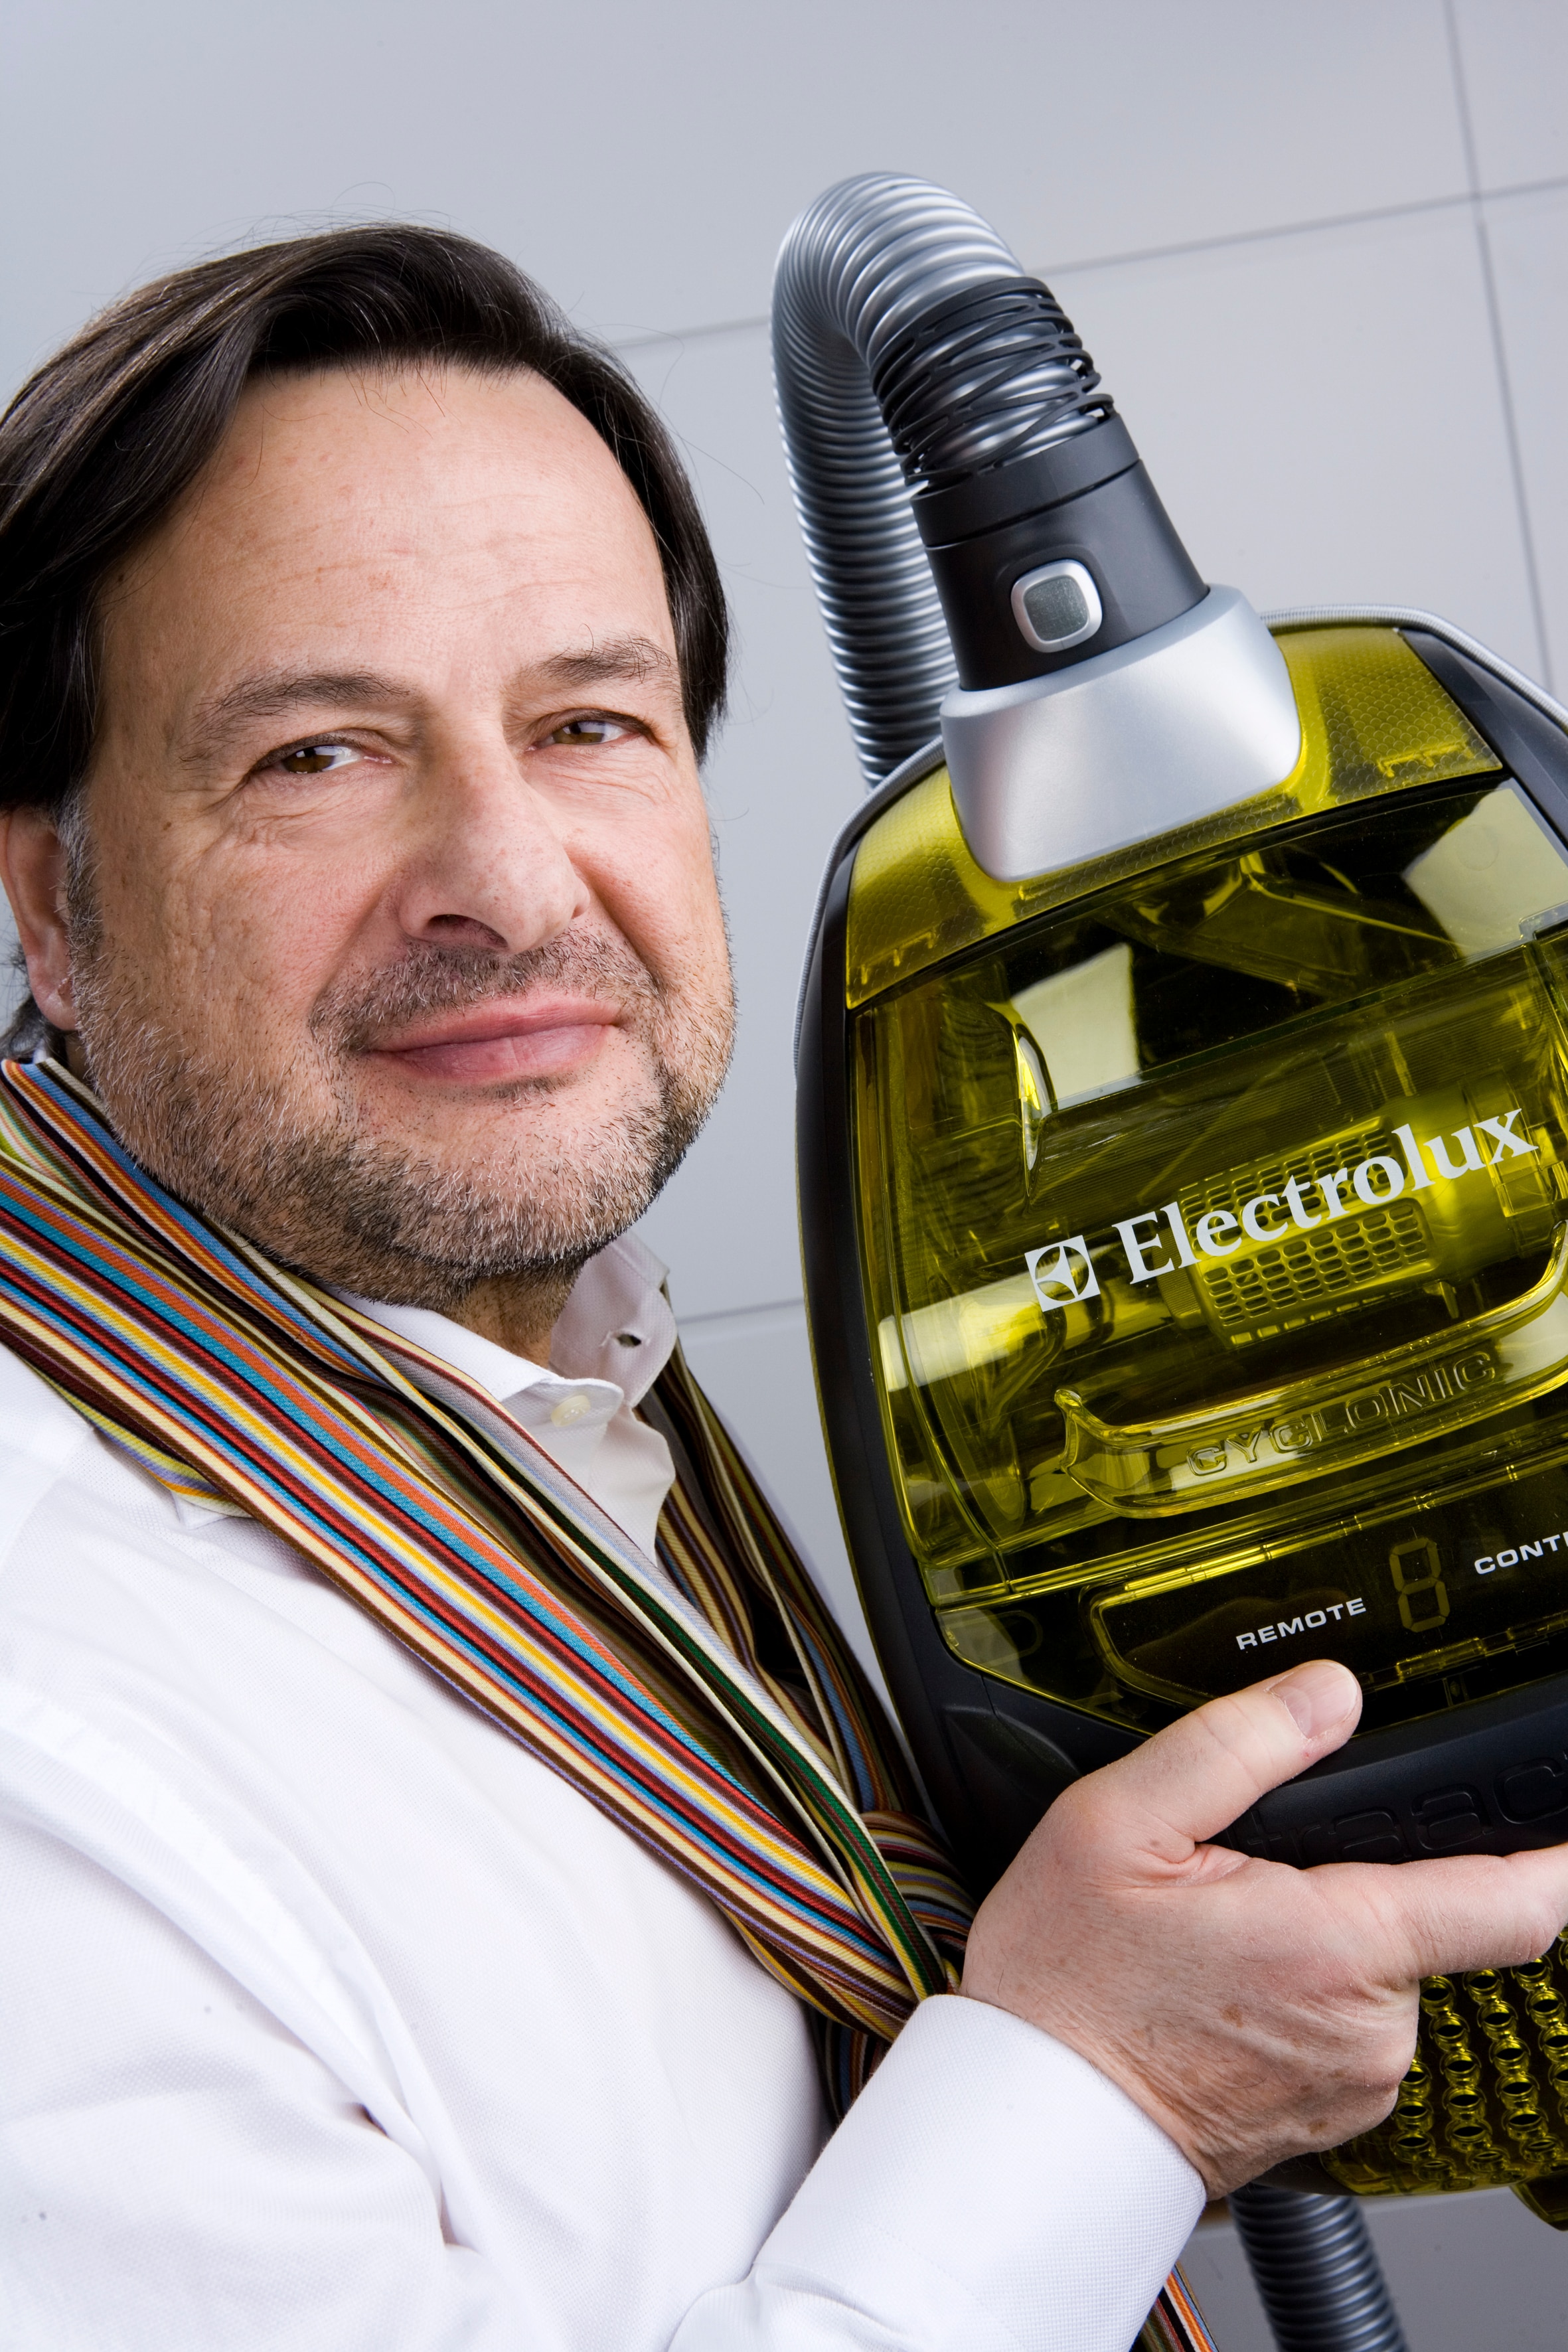 Stefano Marzano har utsetts till Chief Design Officer, en ny roll i Electrolux. Marzano kommer att leda en ny koncernstab som samlar alla designrelaterade kompetenser i koncernen.